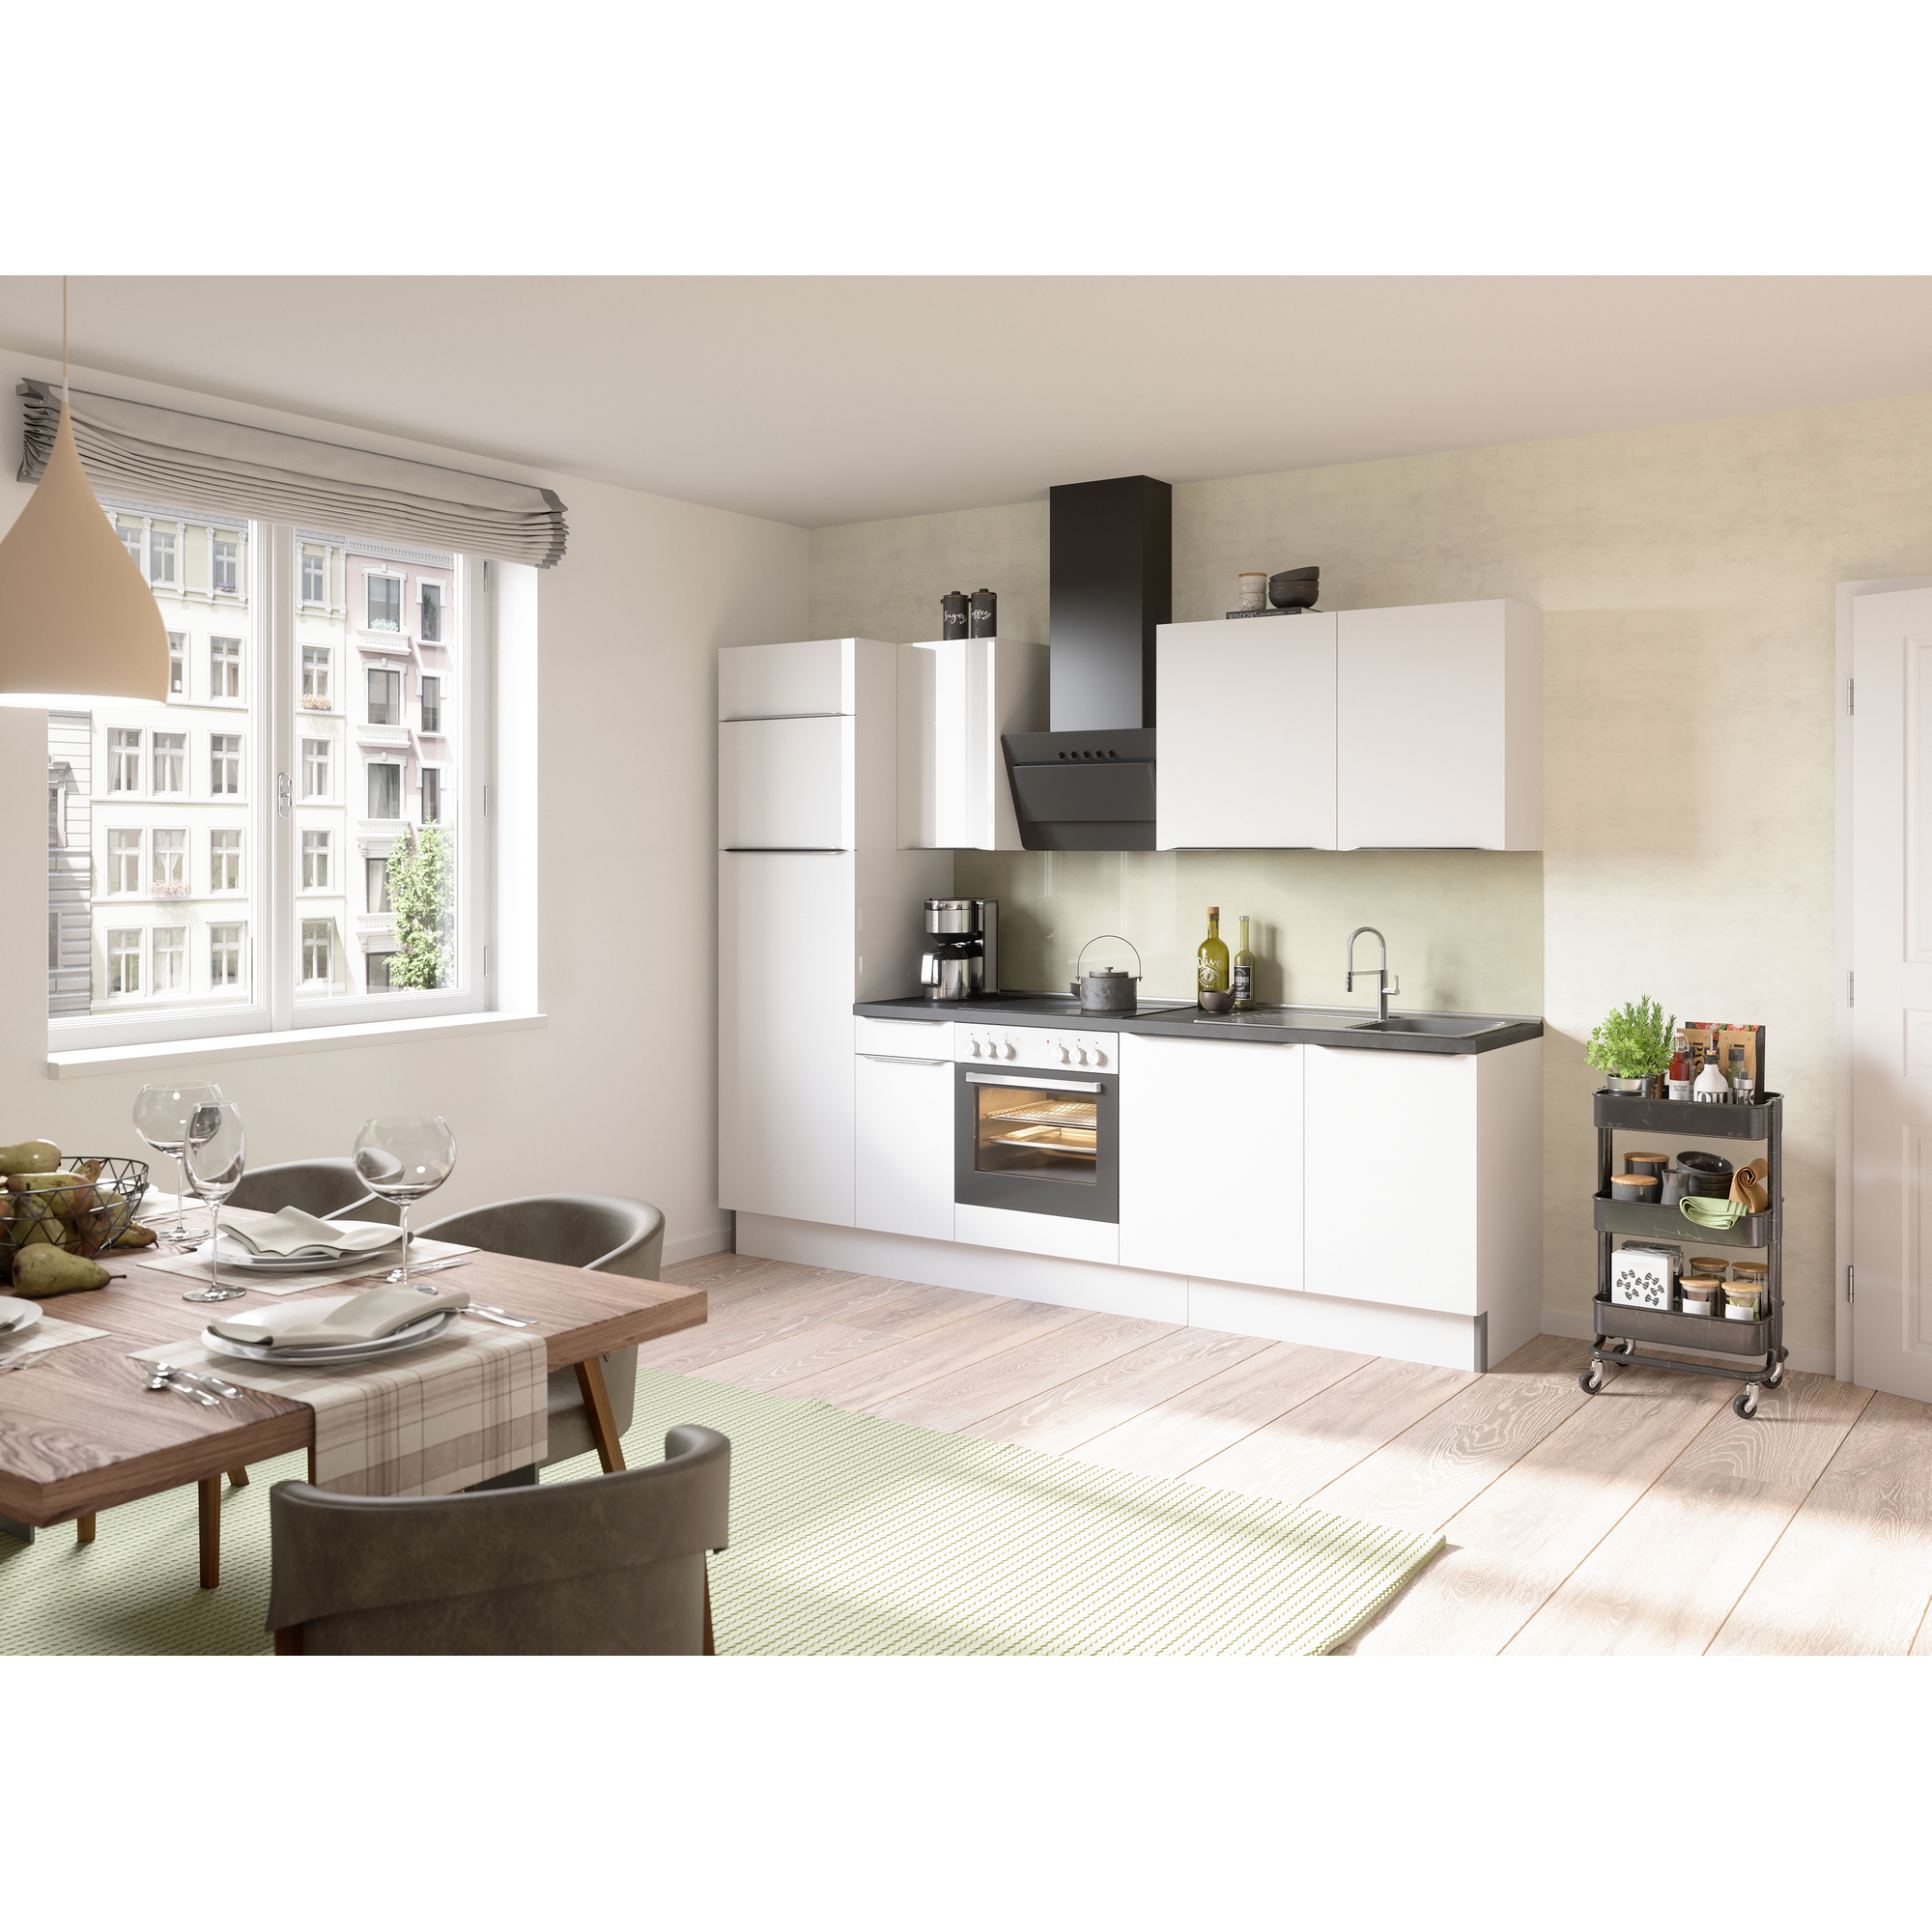 Küchenzeile mit E-Geräten 'OPTIkoncept Arvid986' weiß 270 cm + product picture